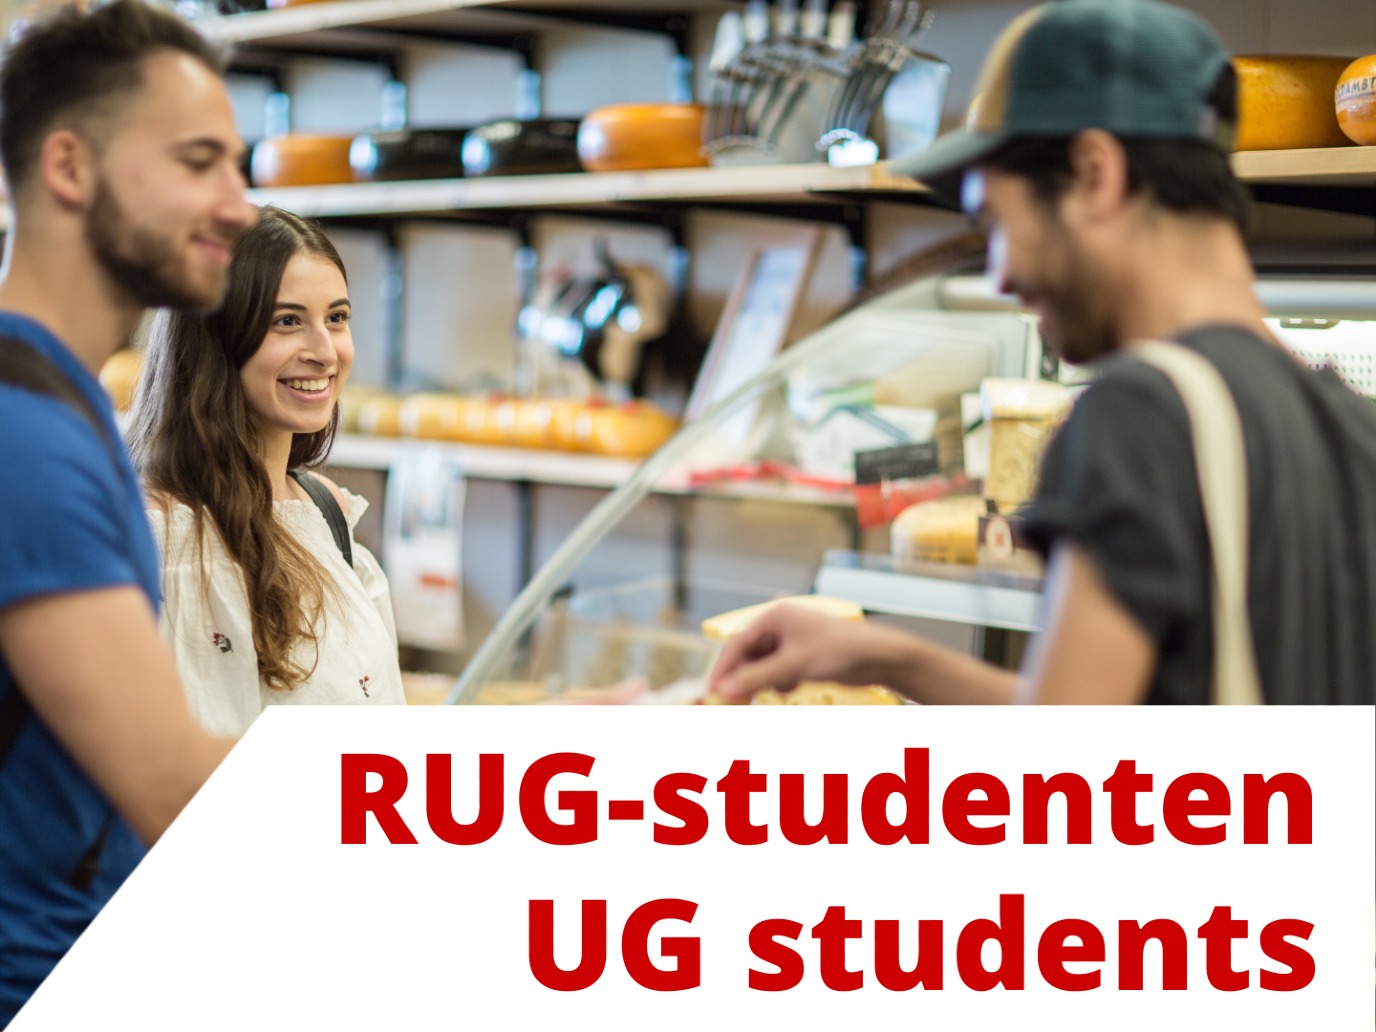 Dutch for UG students, PhD students, and postdocs